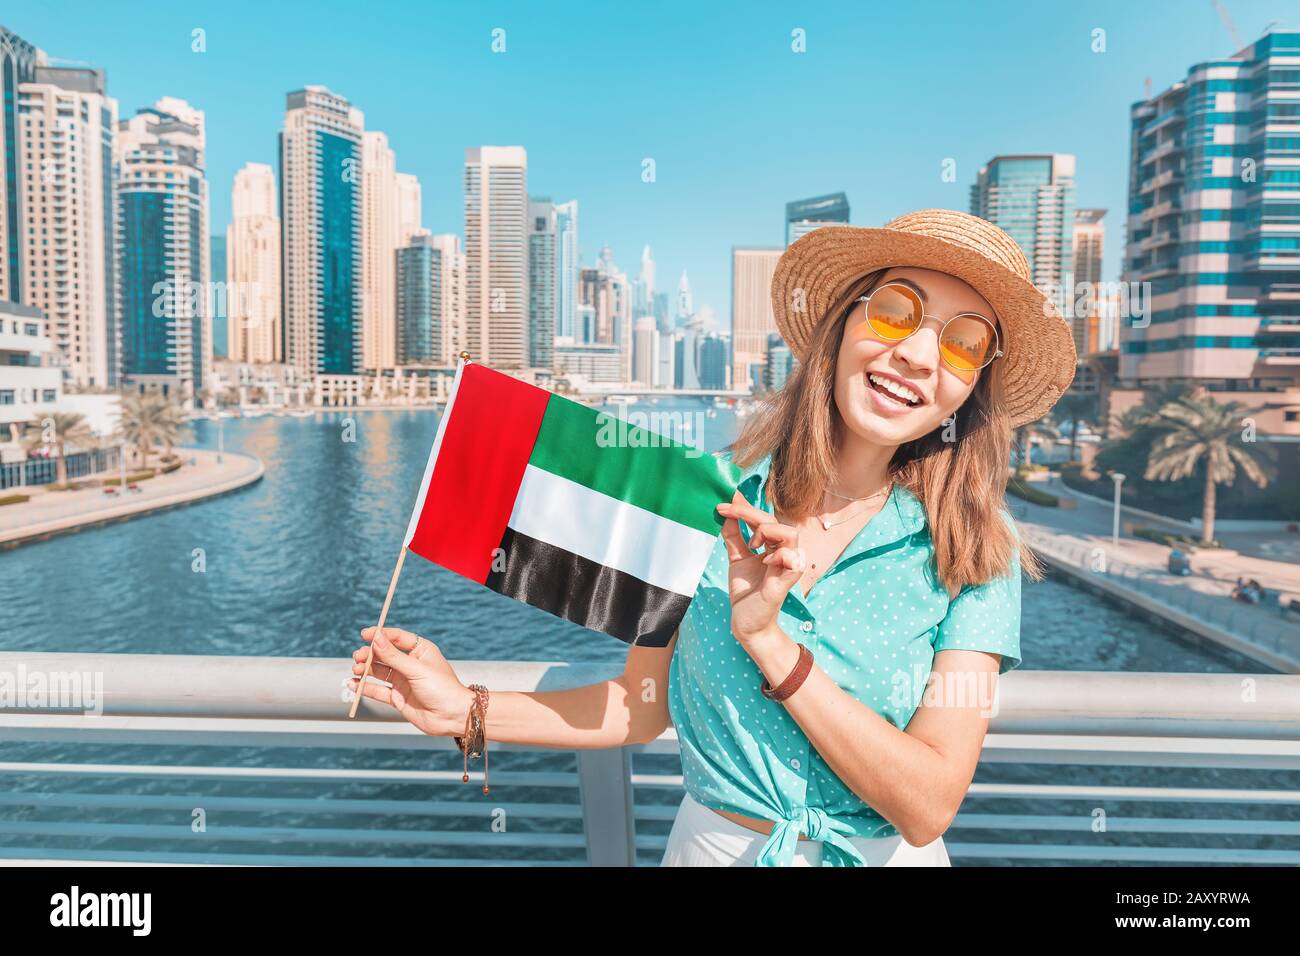 Зарегистрироваться дубай. ЭКСПАТЫ В Дубае. Арабские эмираты женщины. Турист с флагом ОАЭ. Мы в Дубае.